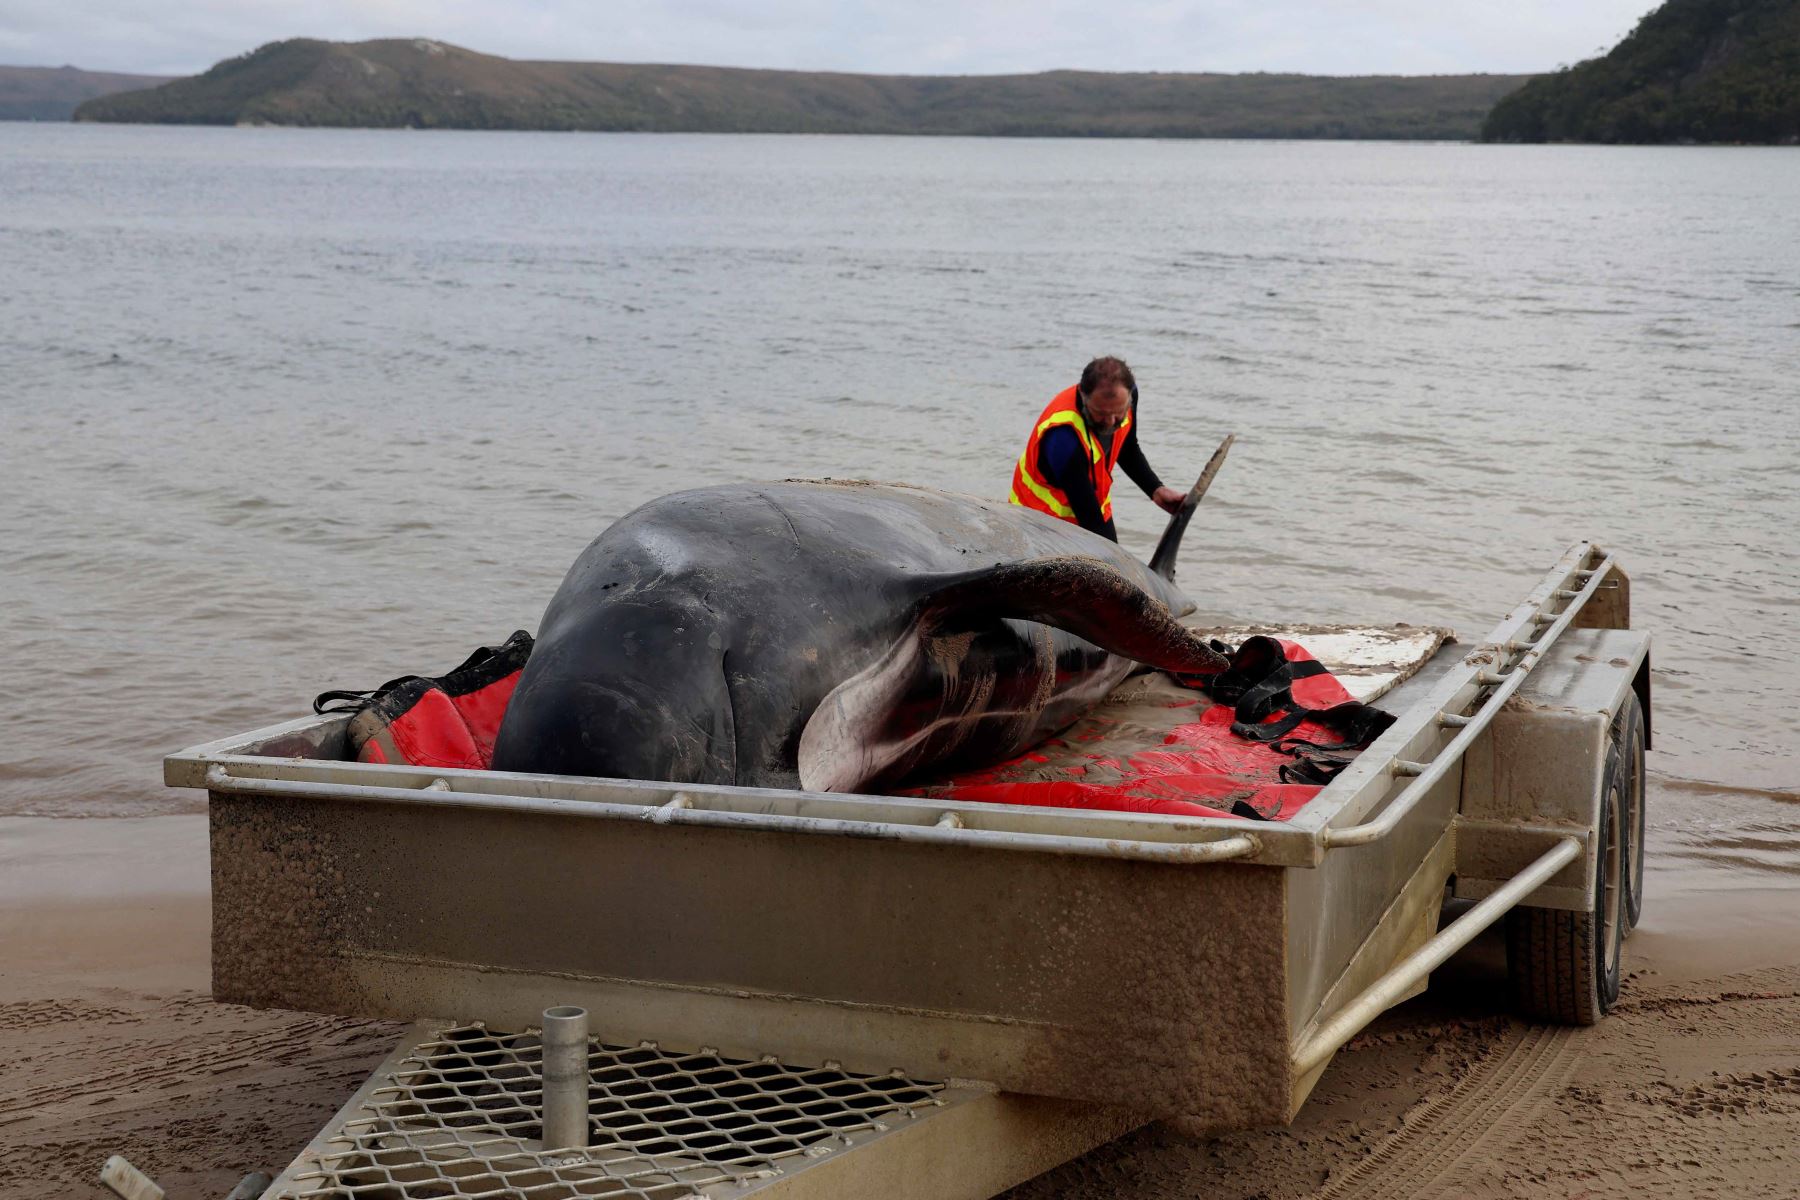 Alrededor de 200 ballenas piloto murieron en una playa de la bahía de Macquarie, en el oeste de la isla australiana de Tasmania, y 35 fueron rescatadas con vida después del varamiento masivo ocurrido la víspera en este remoto lugar, informaron este jueves las autoridades del país oceánico. Foto: AFP